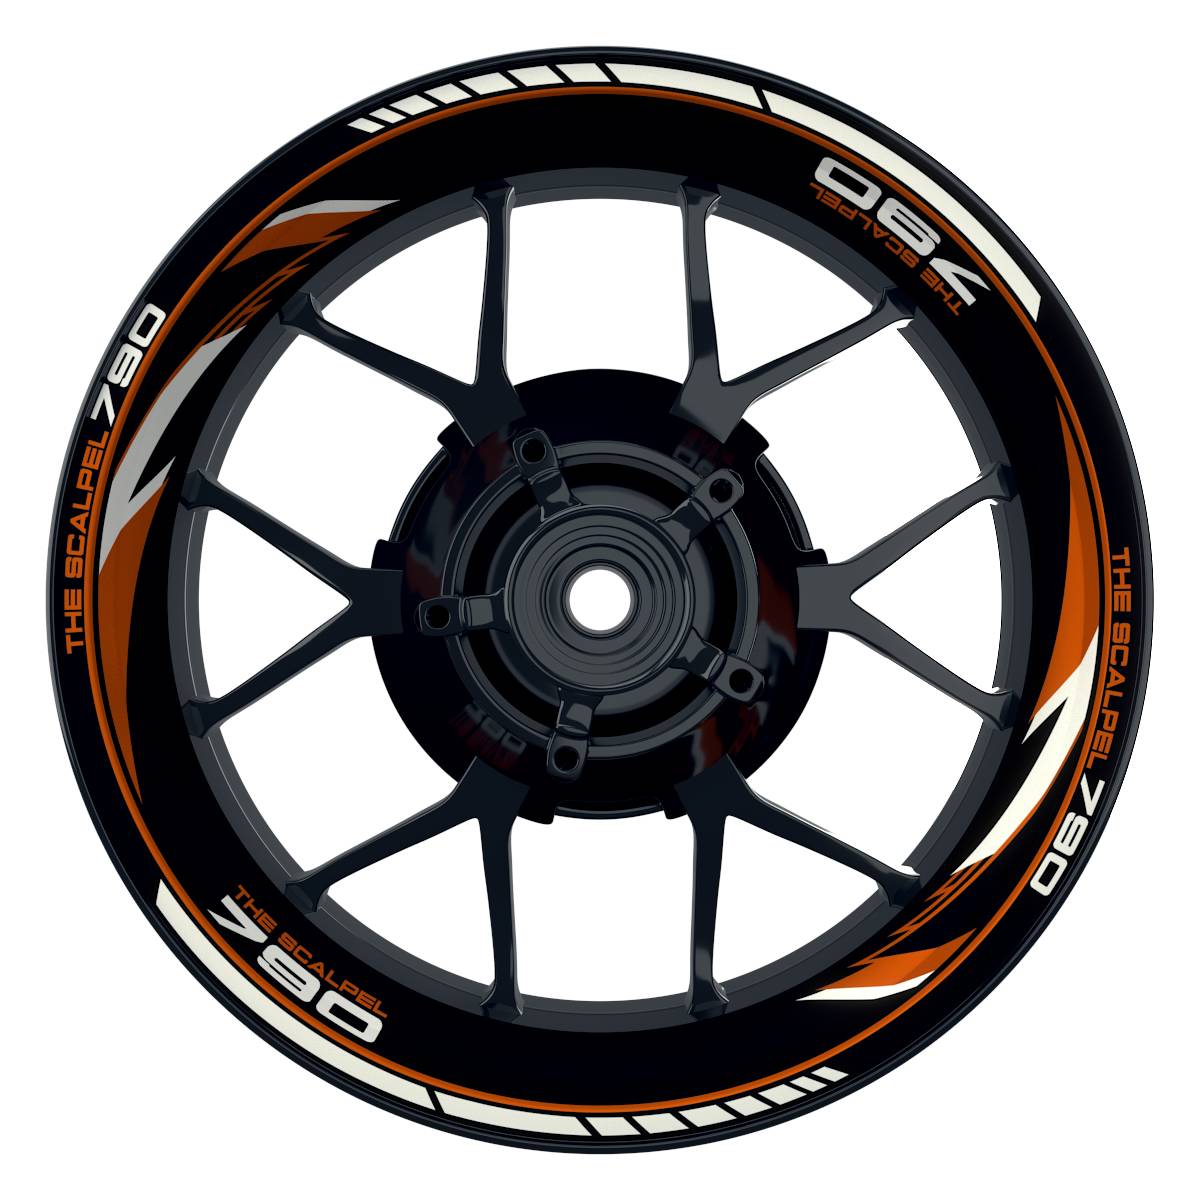 THE SCALPEL 790 Razor schwarz orange Wheelsticker Felgenaufkleber